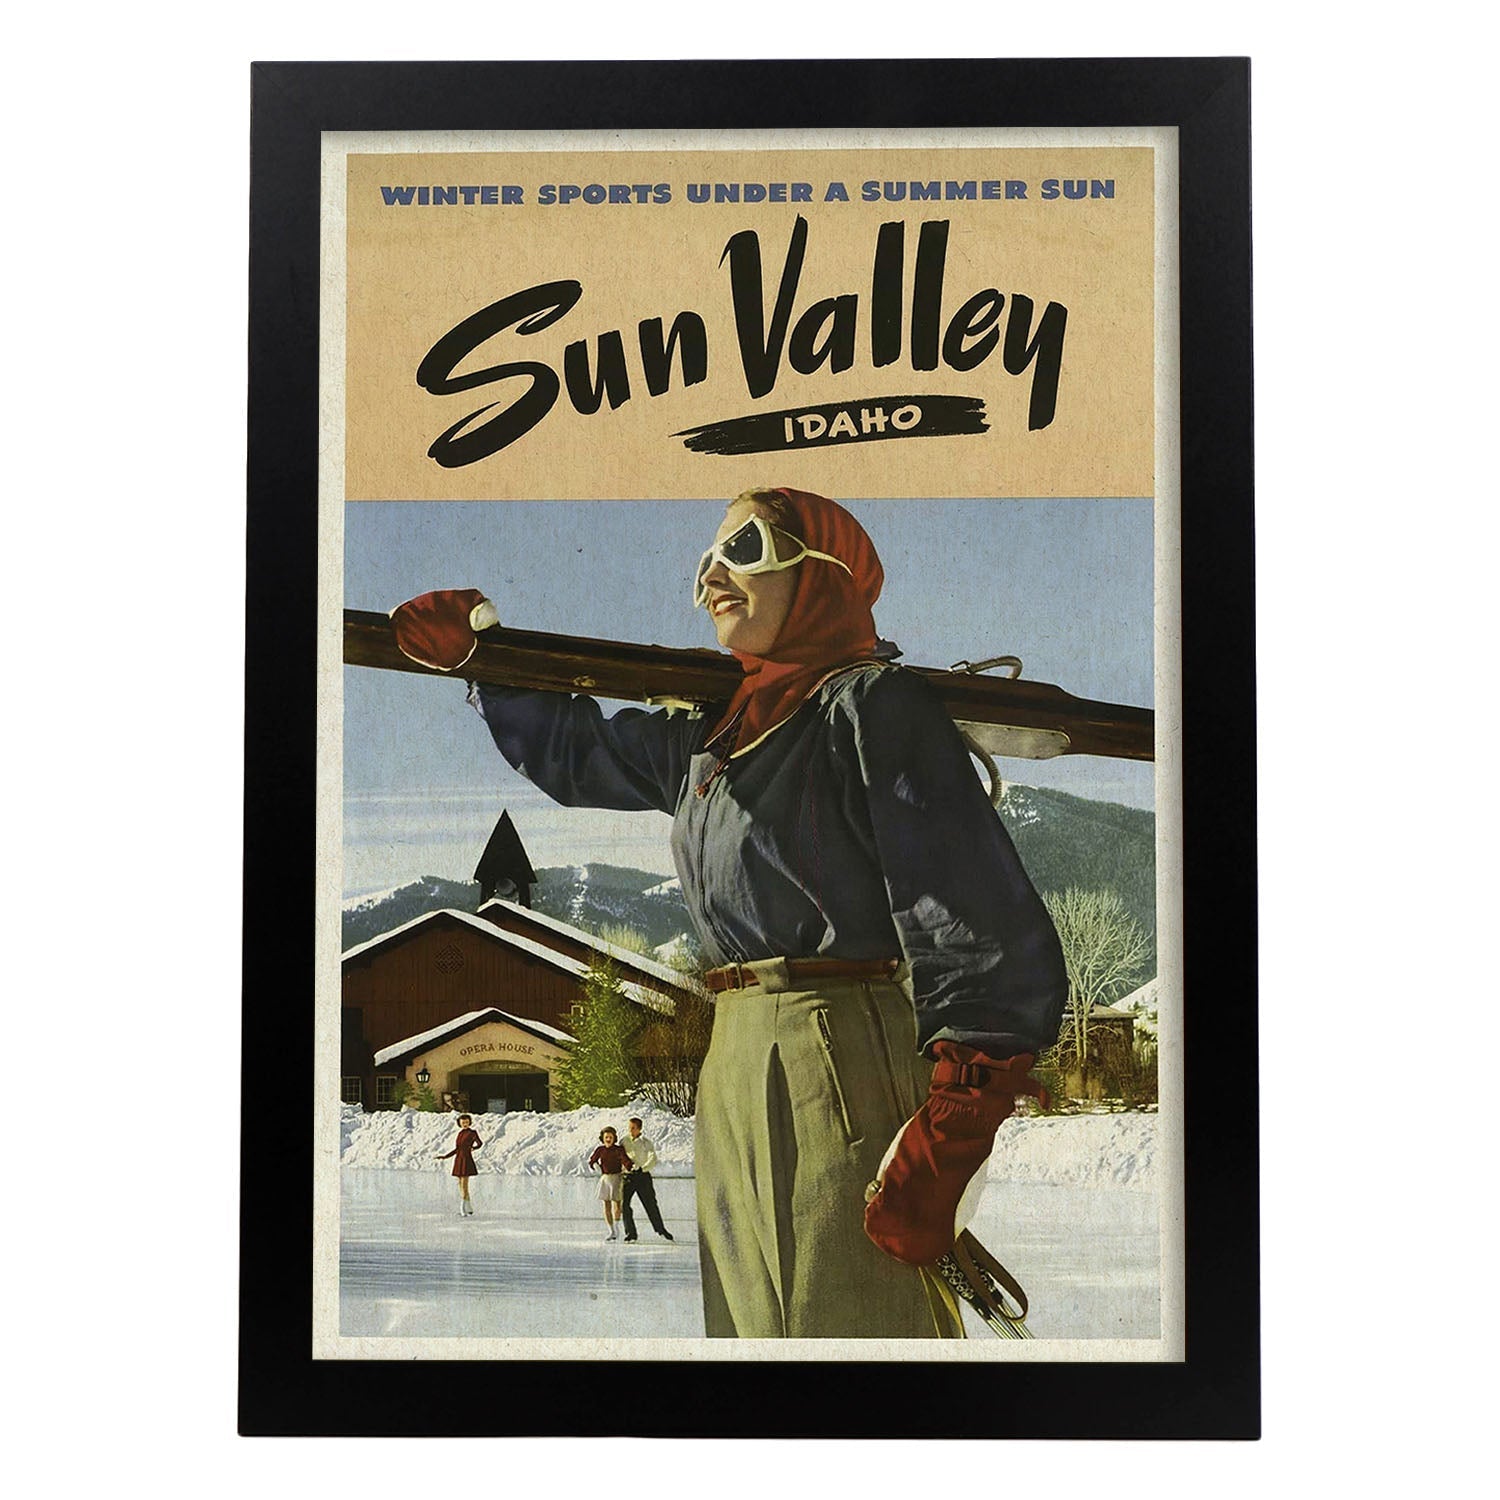 Poster Vintage. Cartel Vintage de América. Valle del Sol, Idaho.-Artwork-Nacnic-A4-Marco Negro-Nacnic Estudio SL